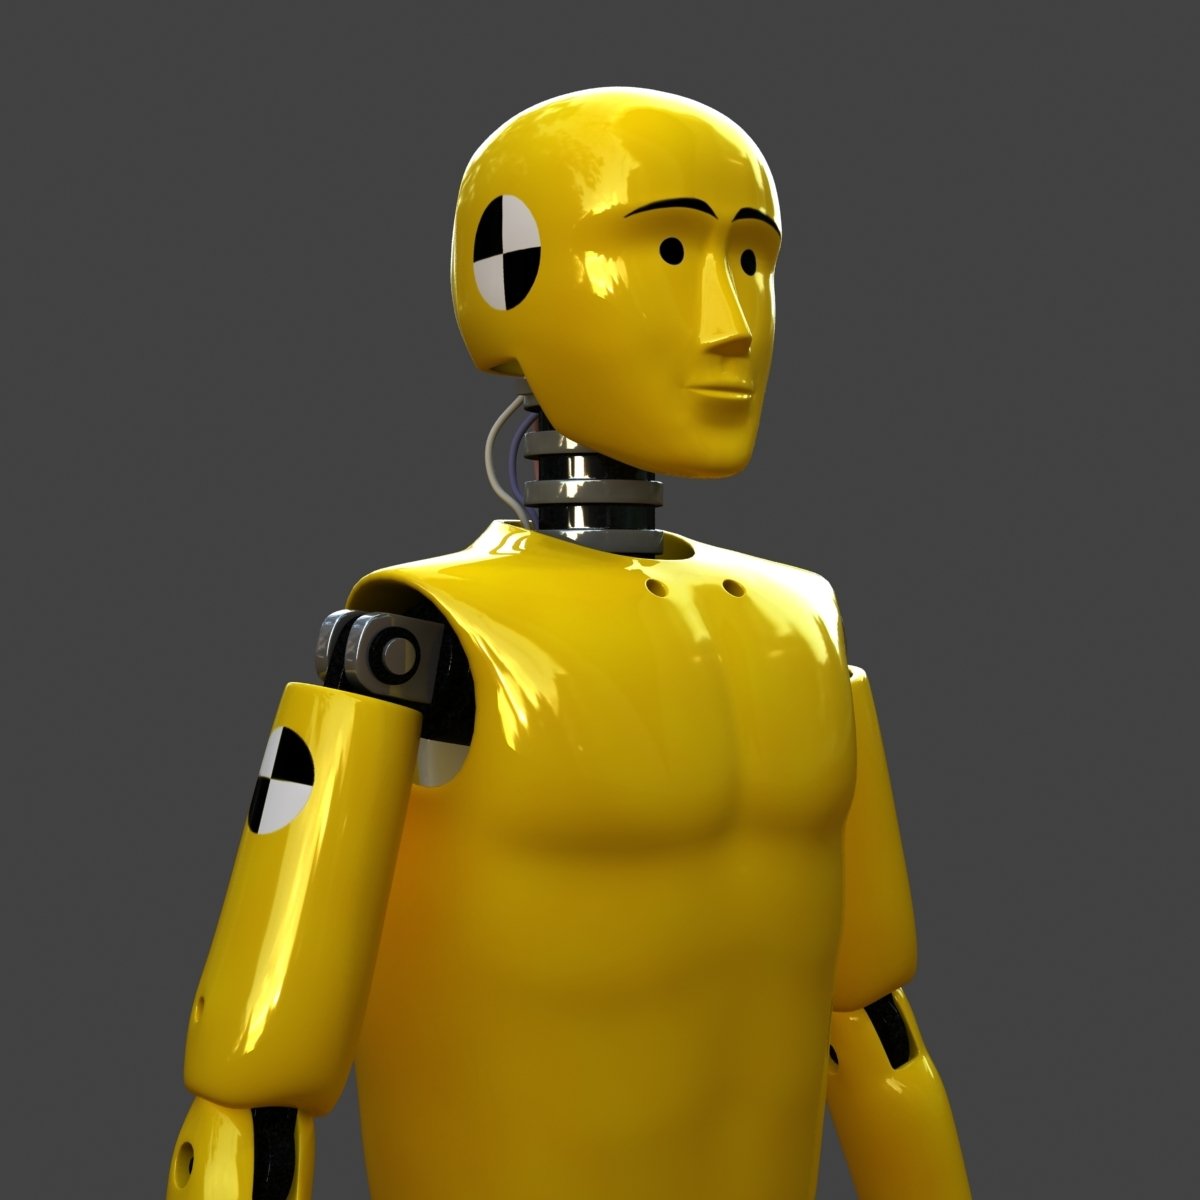 Малыш в желтом робот. Crash Test Dummies краш. Желтый робот. Желтый тоббот. Робот желтого цвета.